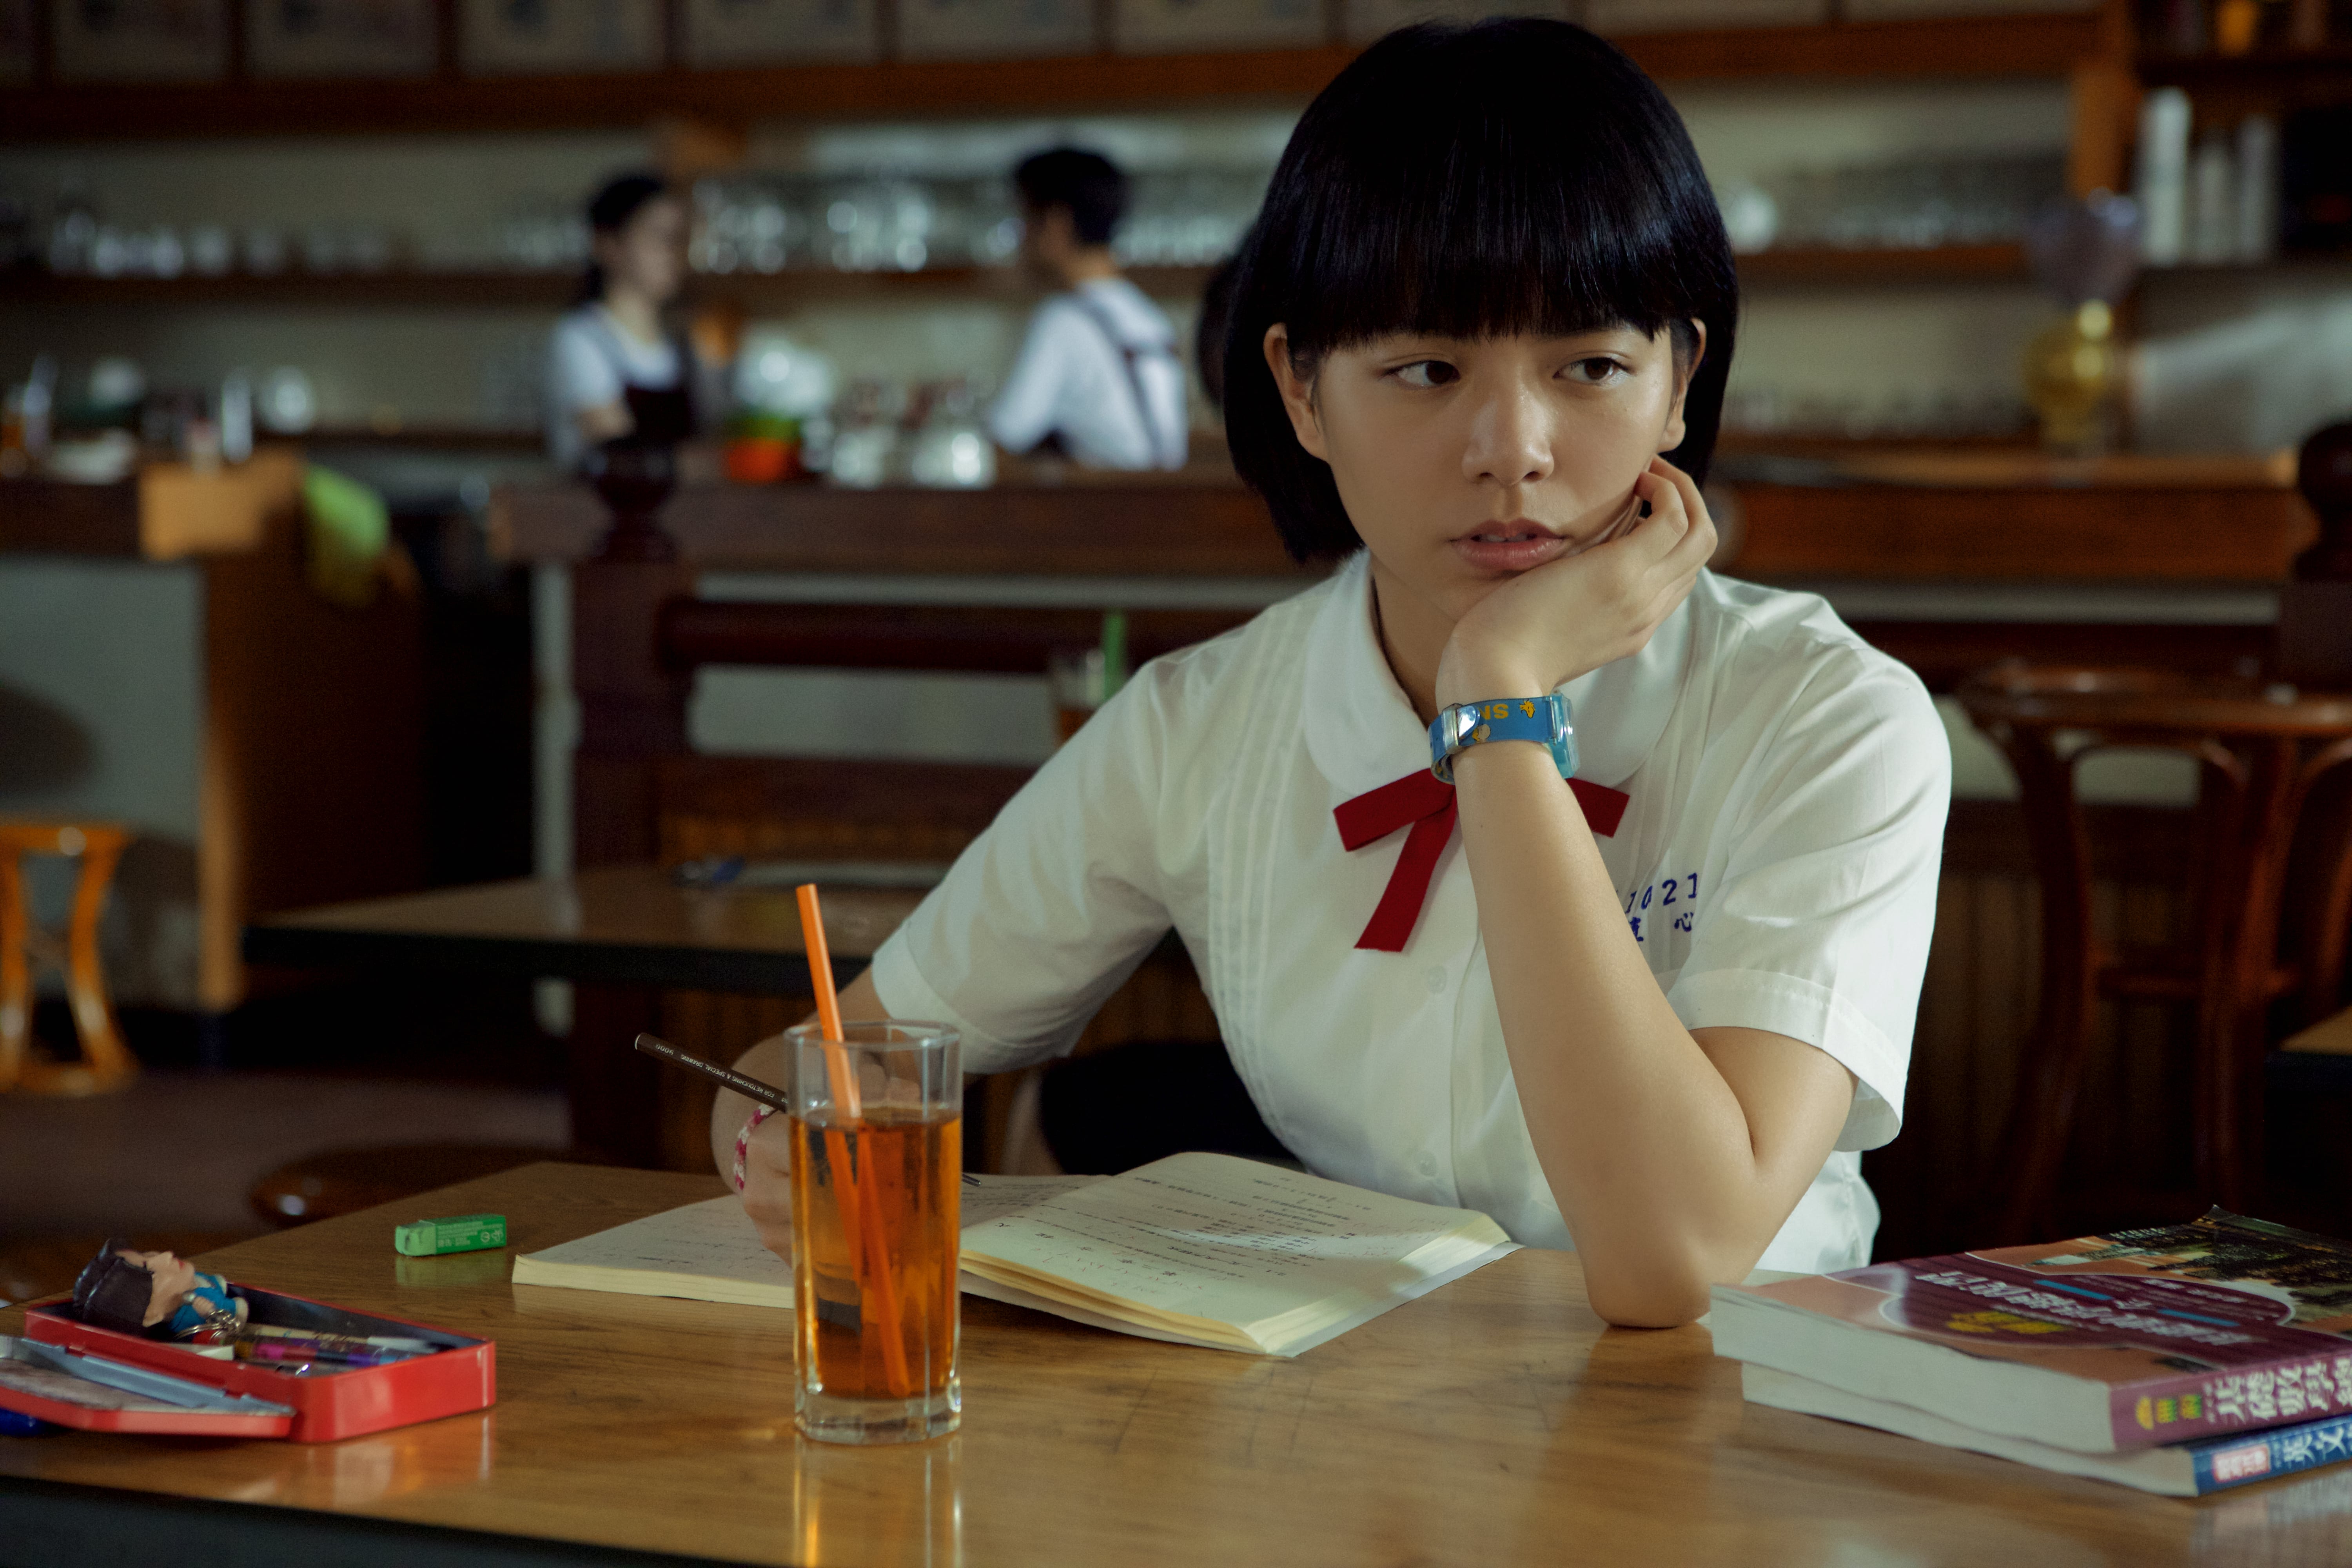 《我的少女時代》5.12韓國上映 允兒拍片宣傳 - KSD 韓星網 (明星)